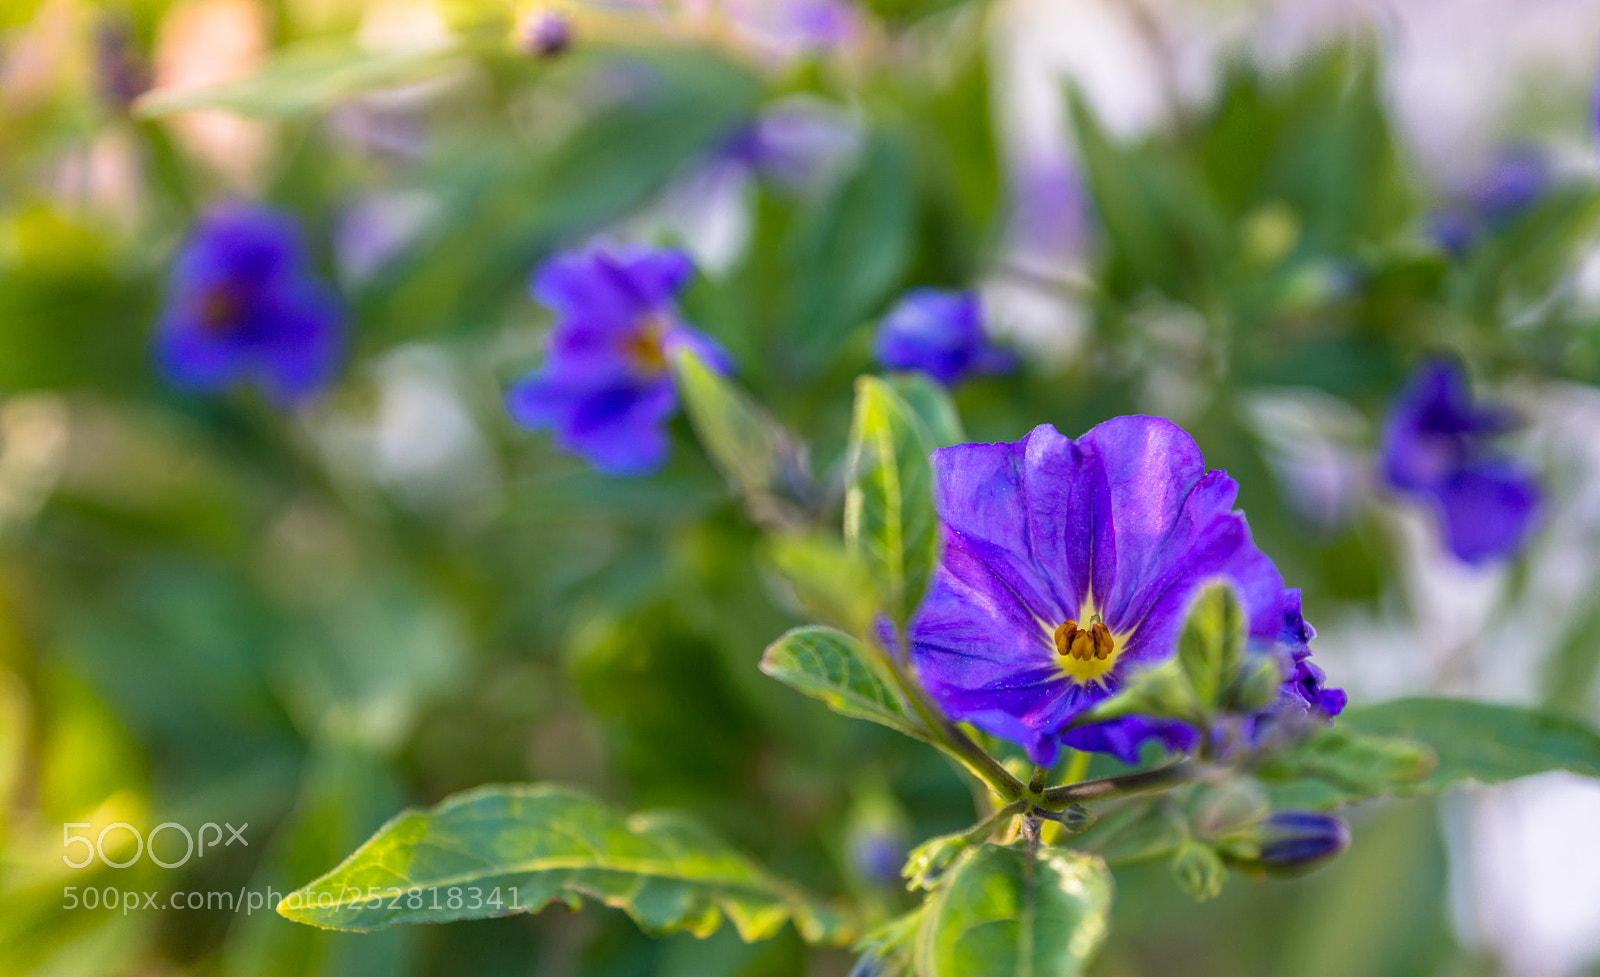 Sony SLT-A77 sample photo. Solano de flor azul photography